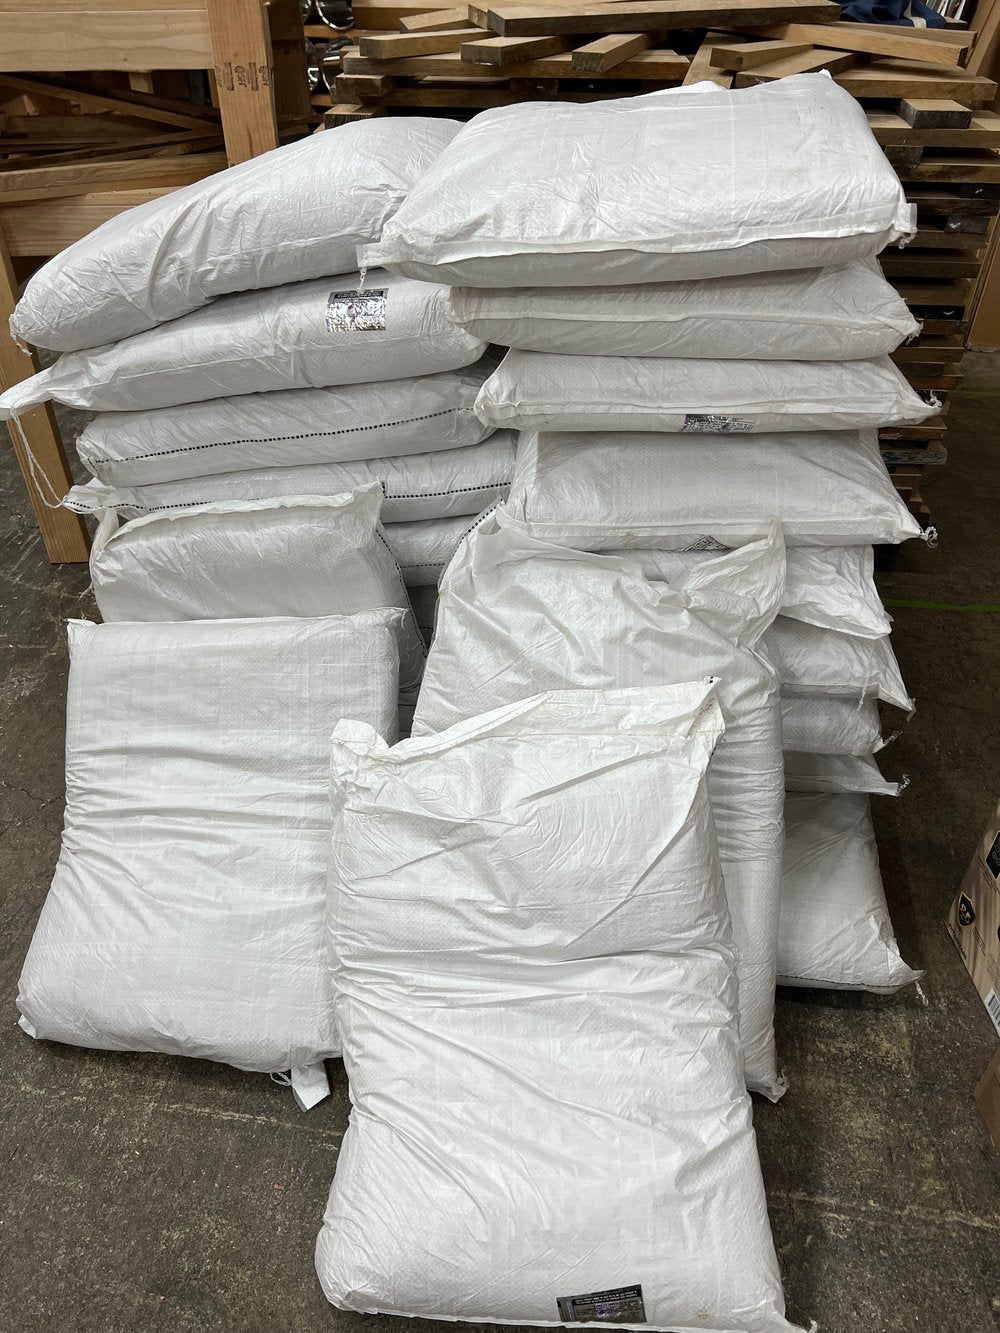 Panela - 25 kg (55 lb) sack - LOCAL PICKUP IN EUGENE, OREGON ONLY